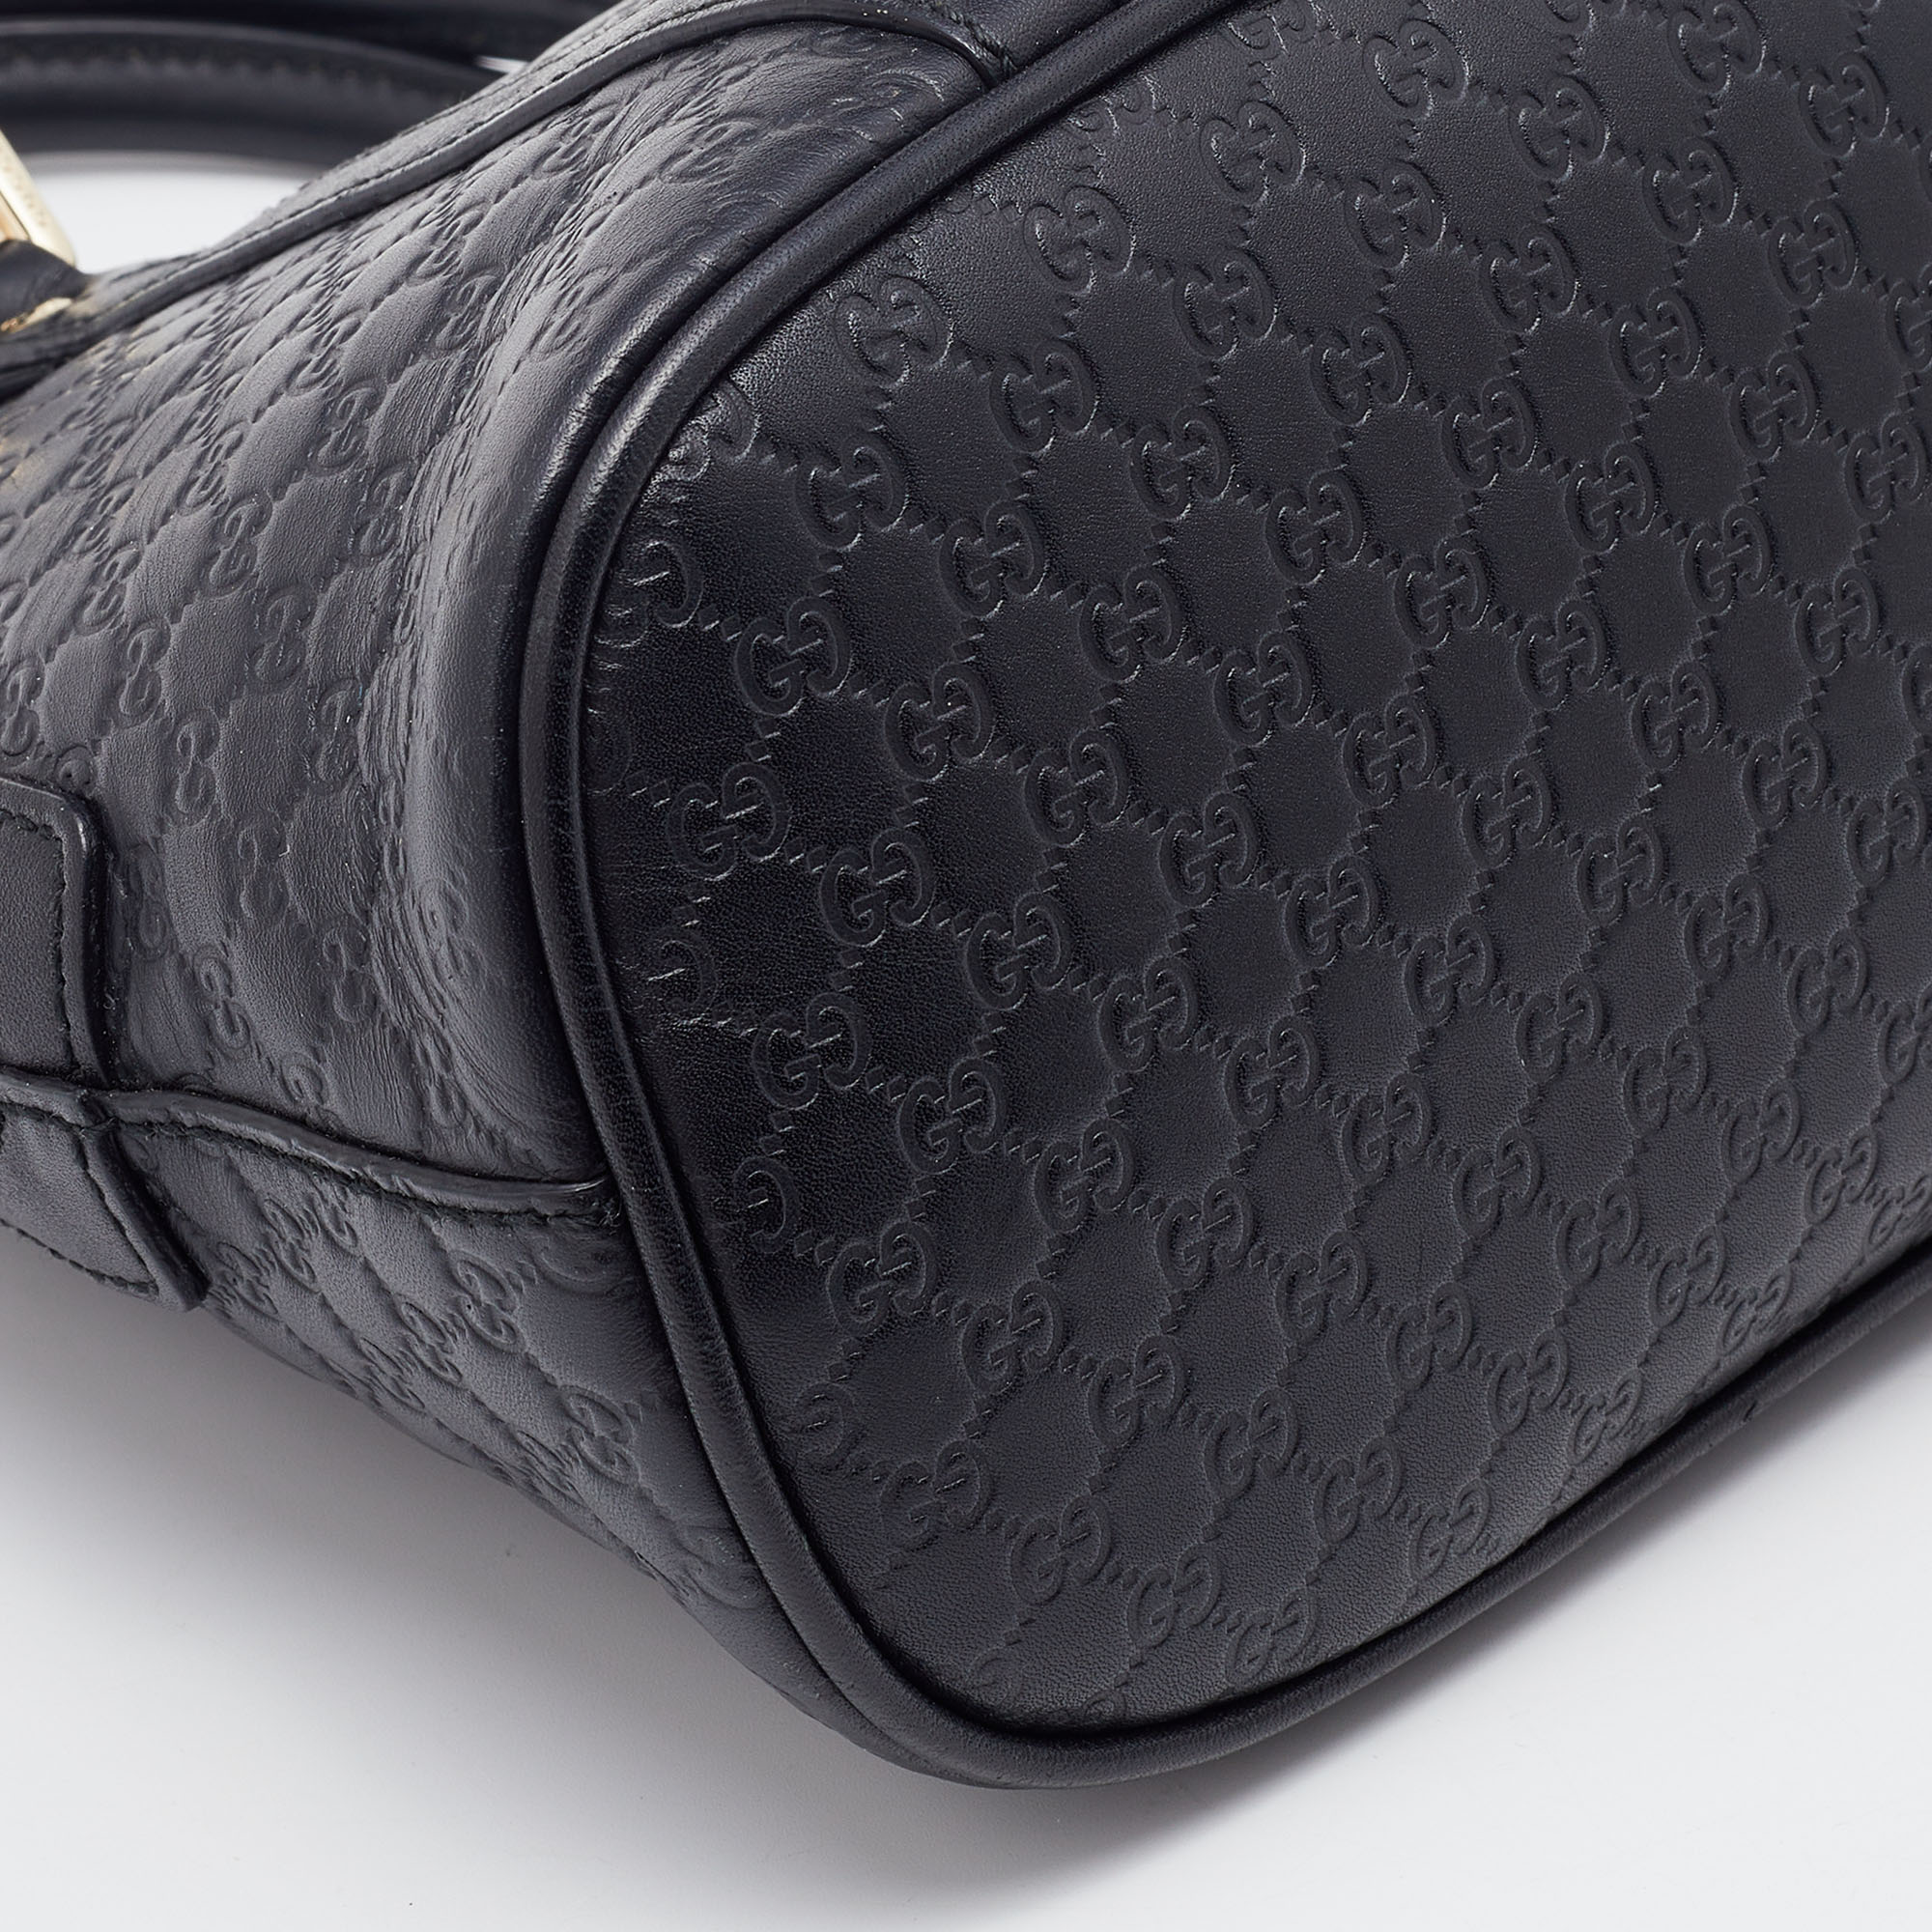 Gucci Black GG Microguccissima Dome Satchel Mini Bag – The Closet